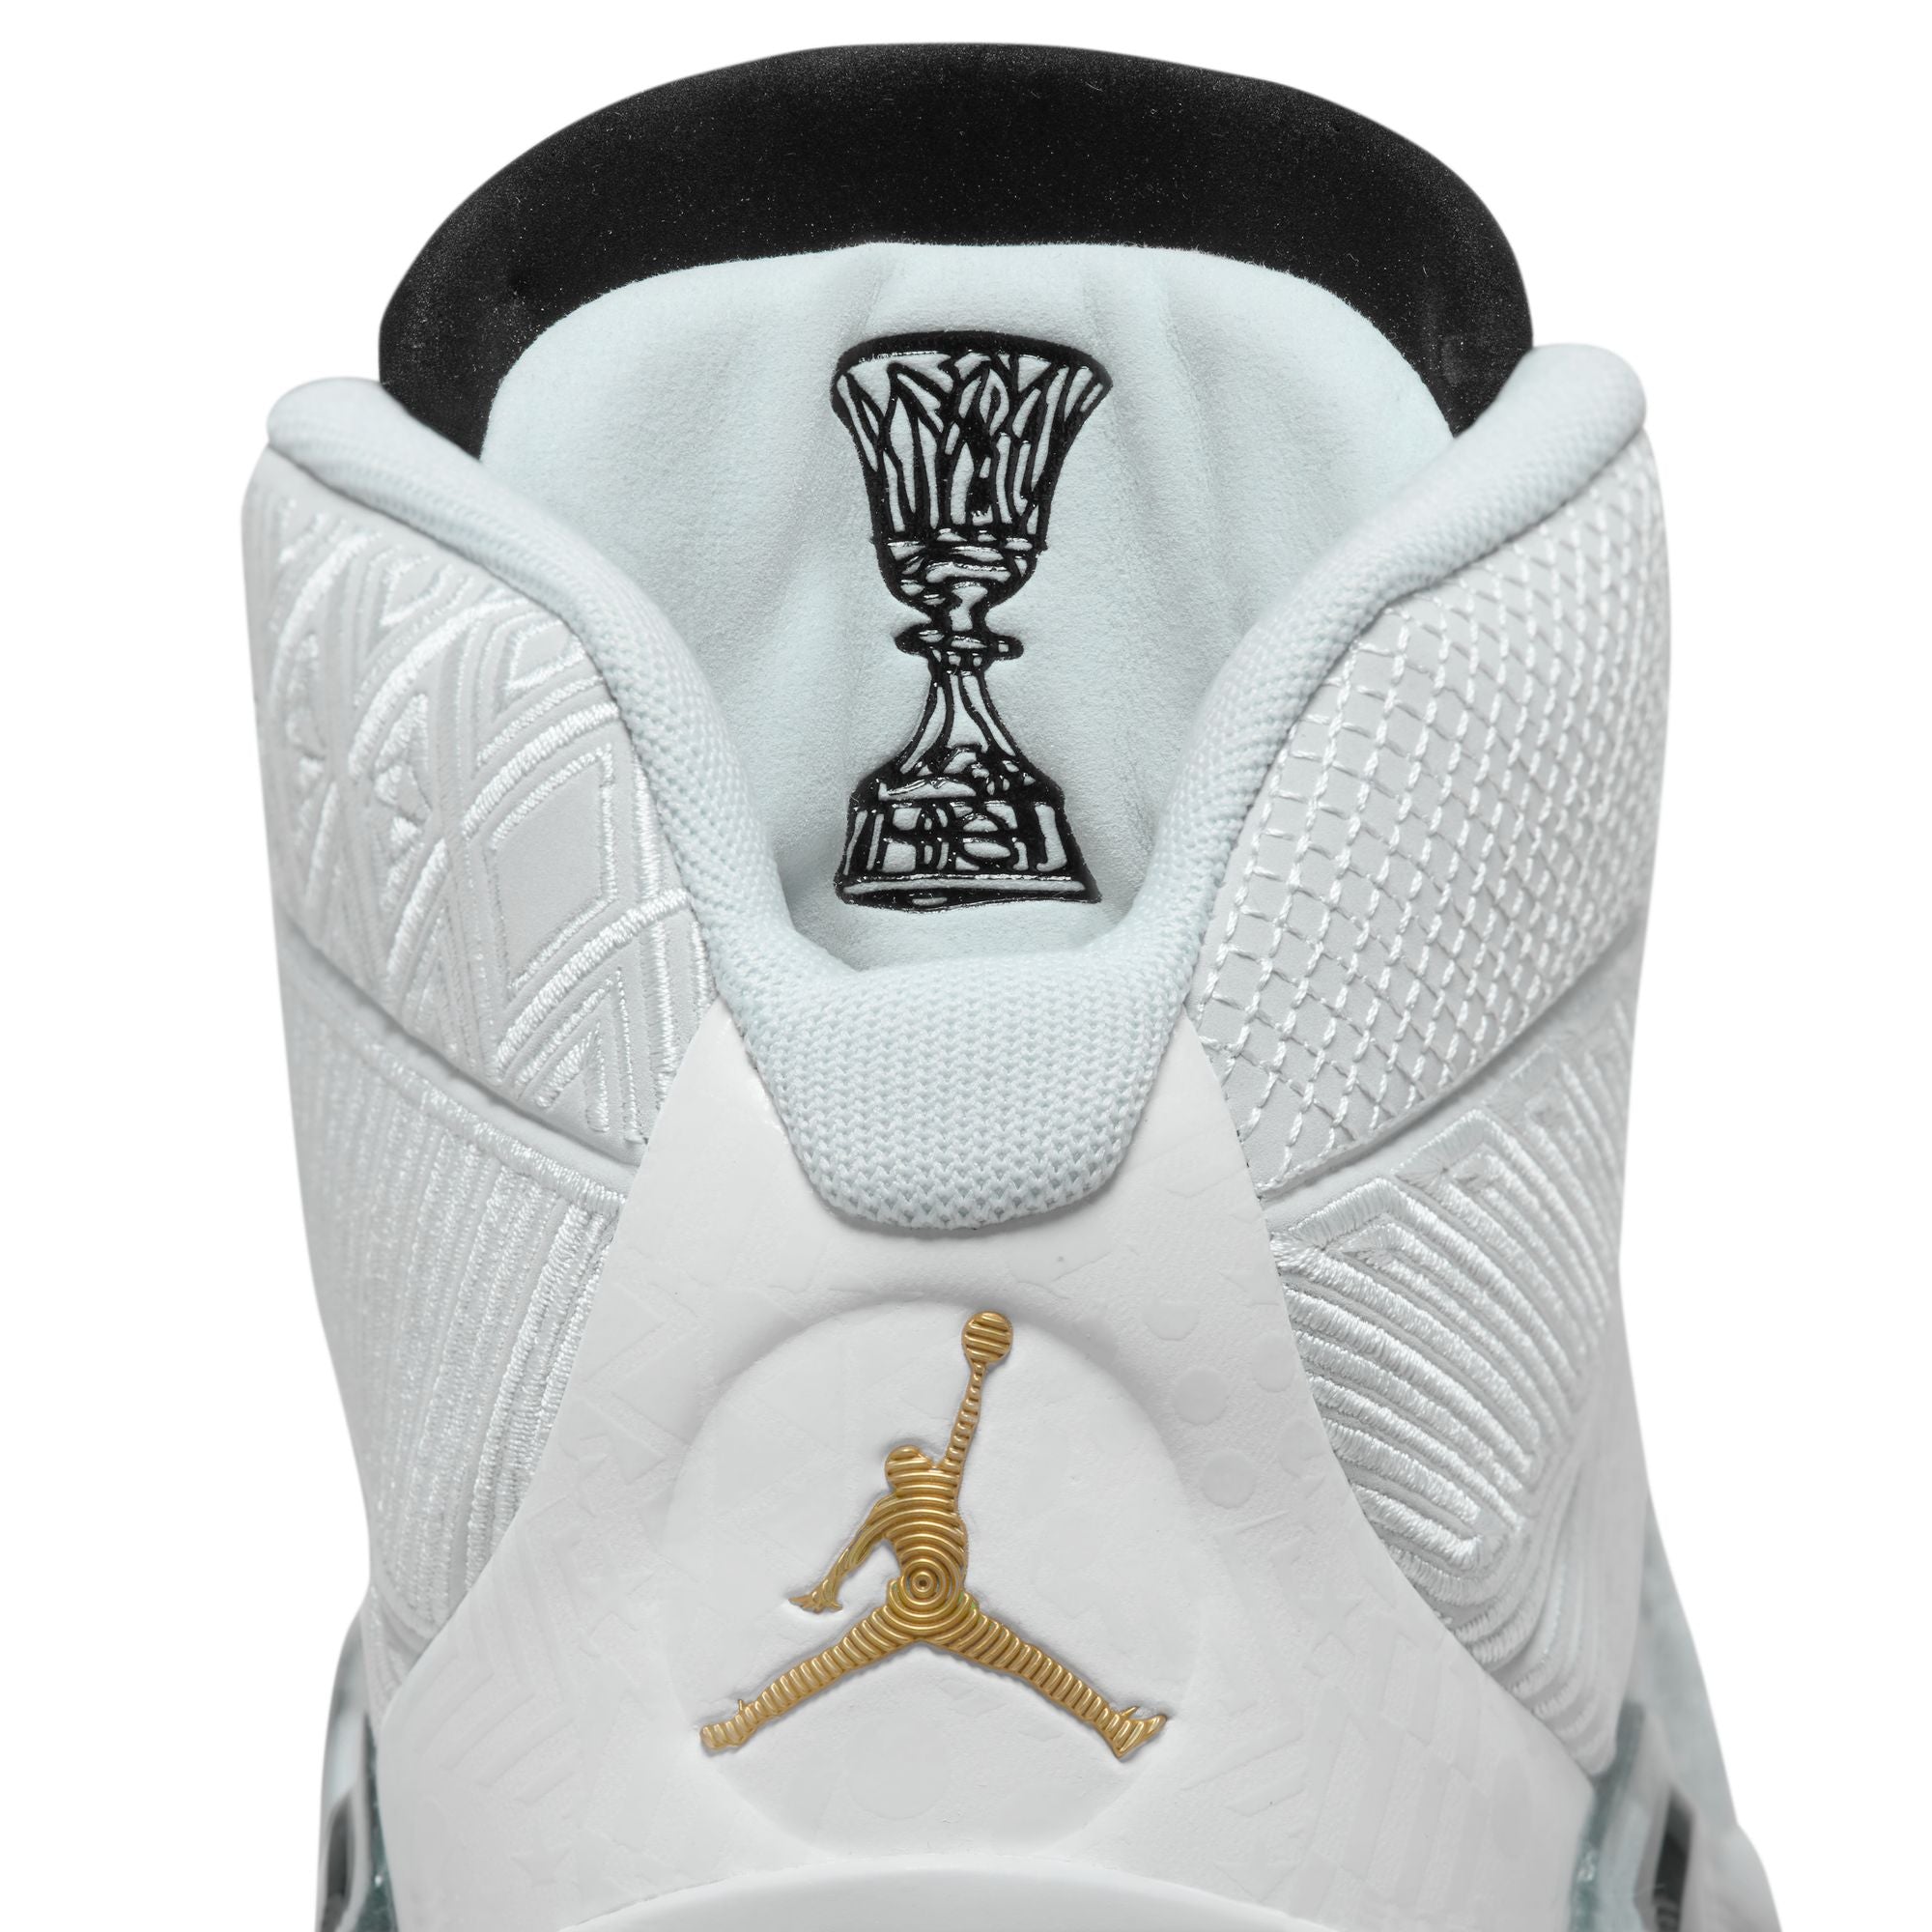 Air Jordan XXXVIII "FIBA" Basketball Shoes